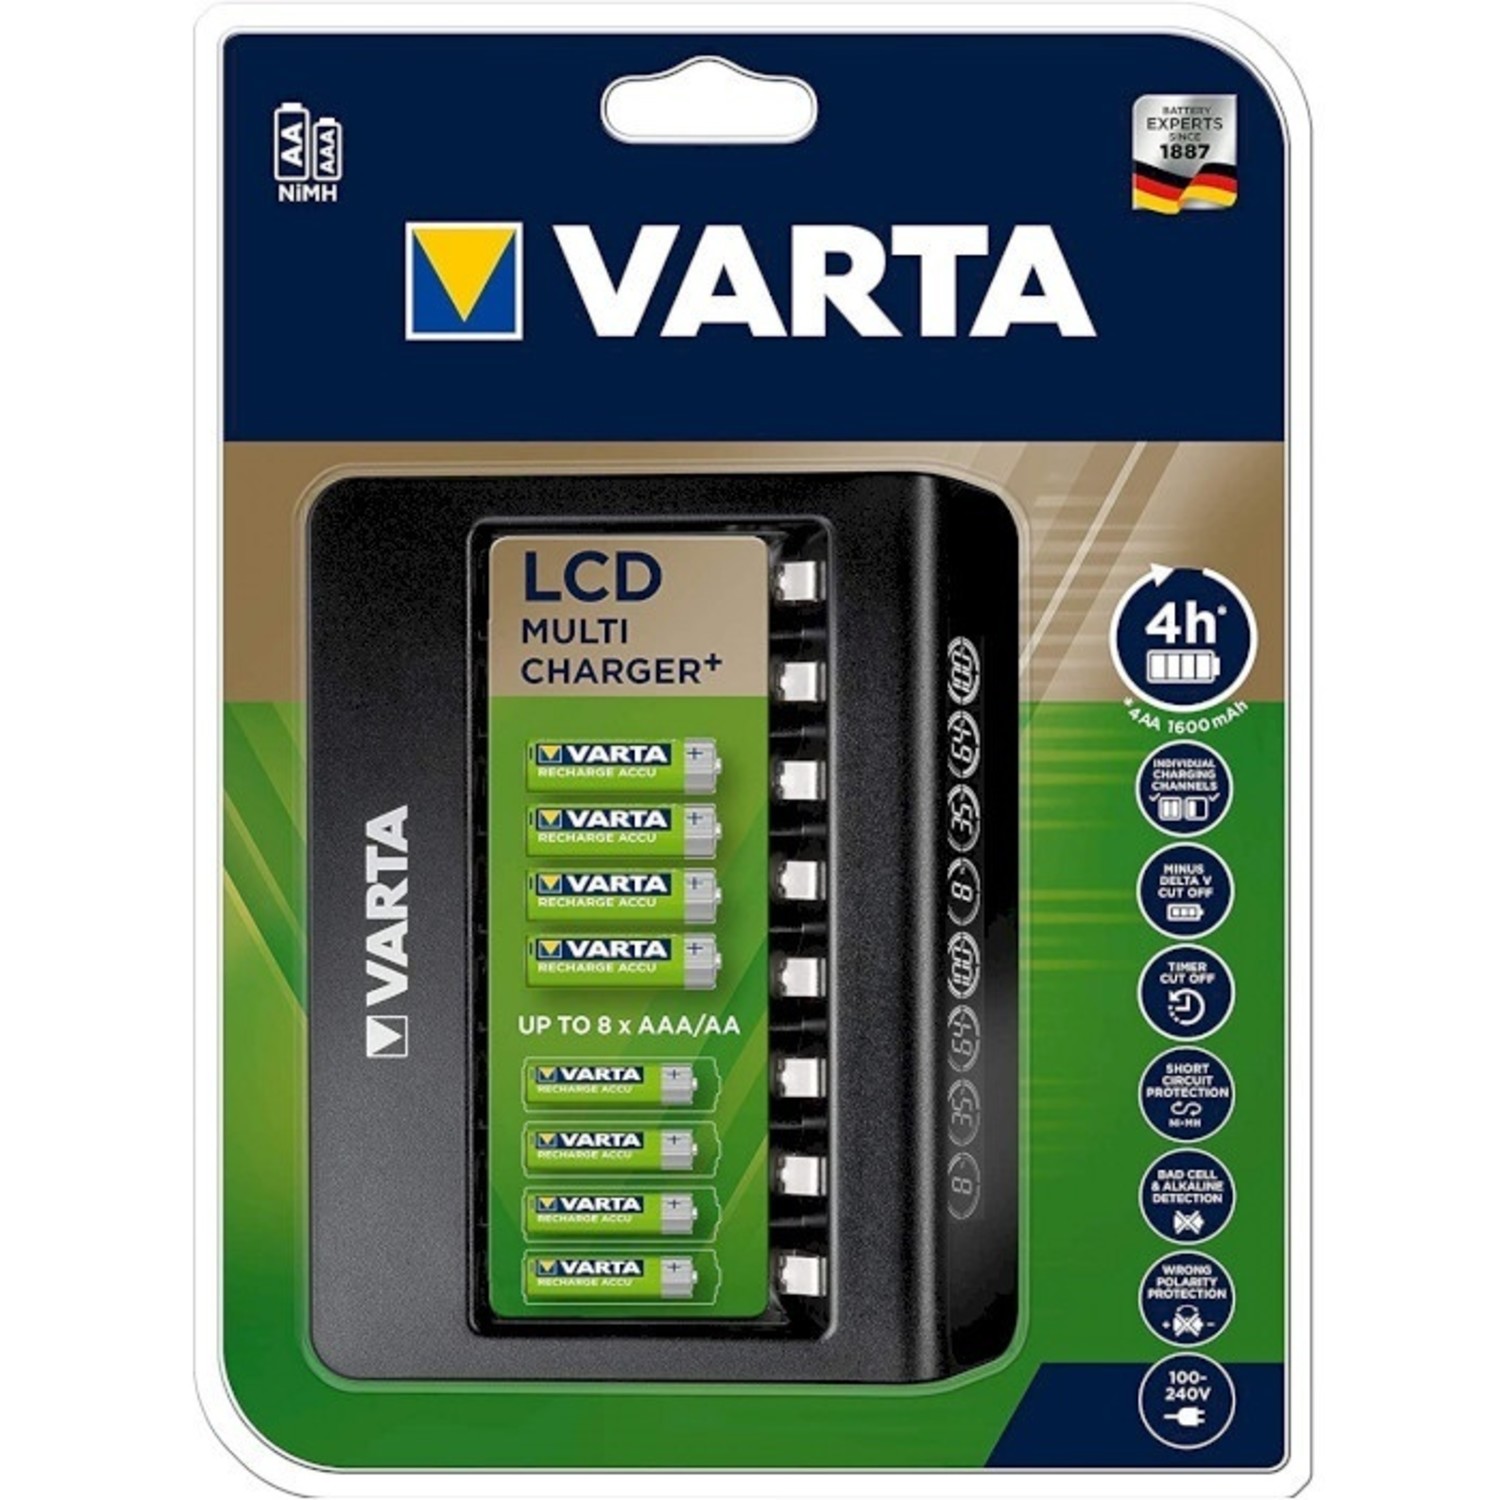 oplader Varta voor 8 AAA oplaadbare batterijen -